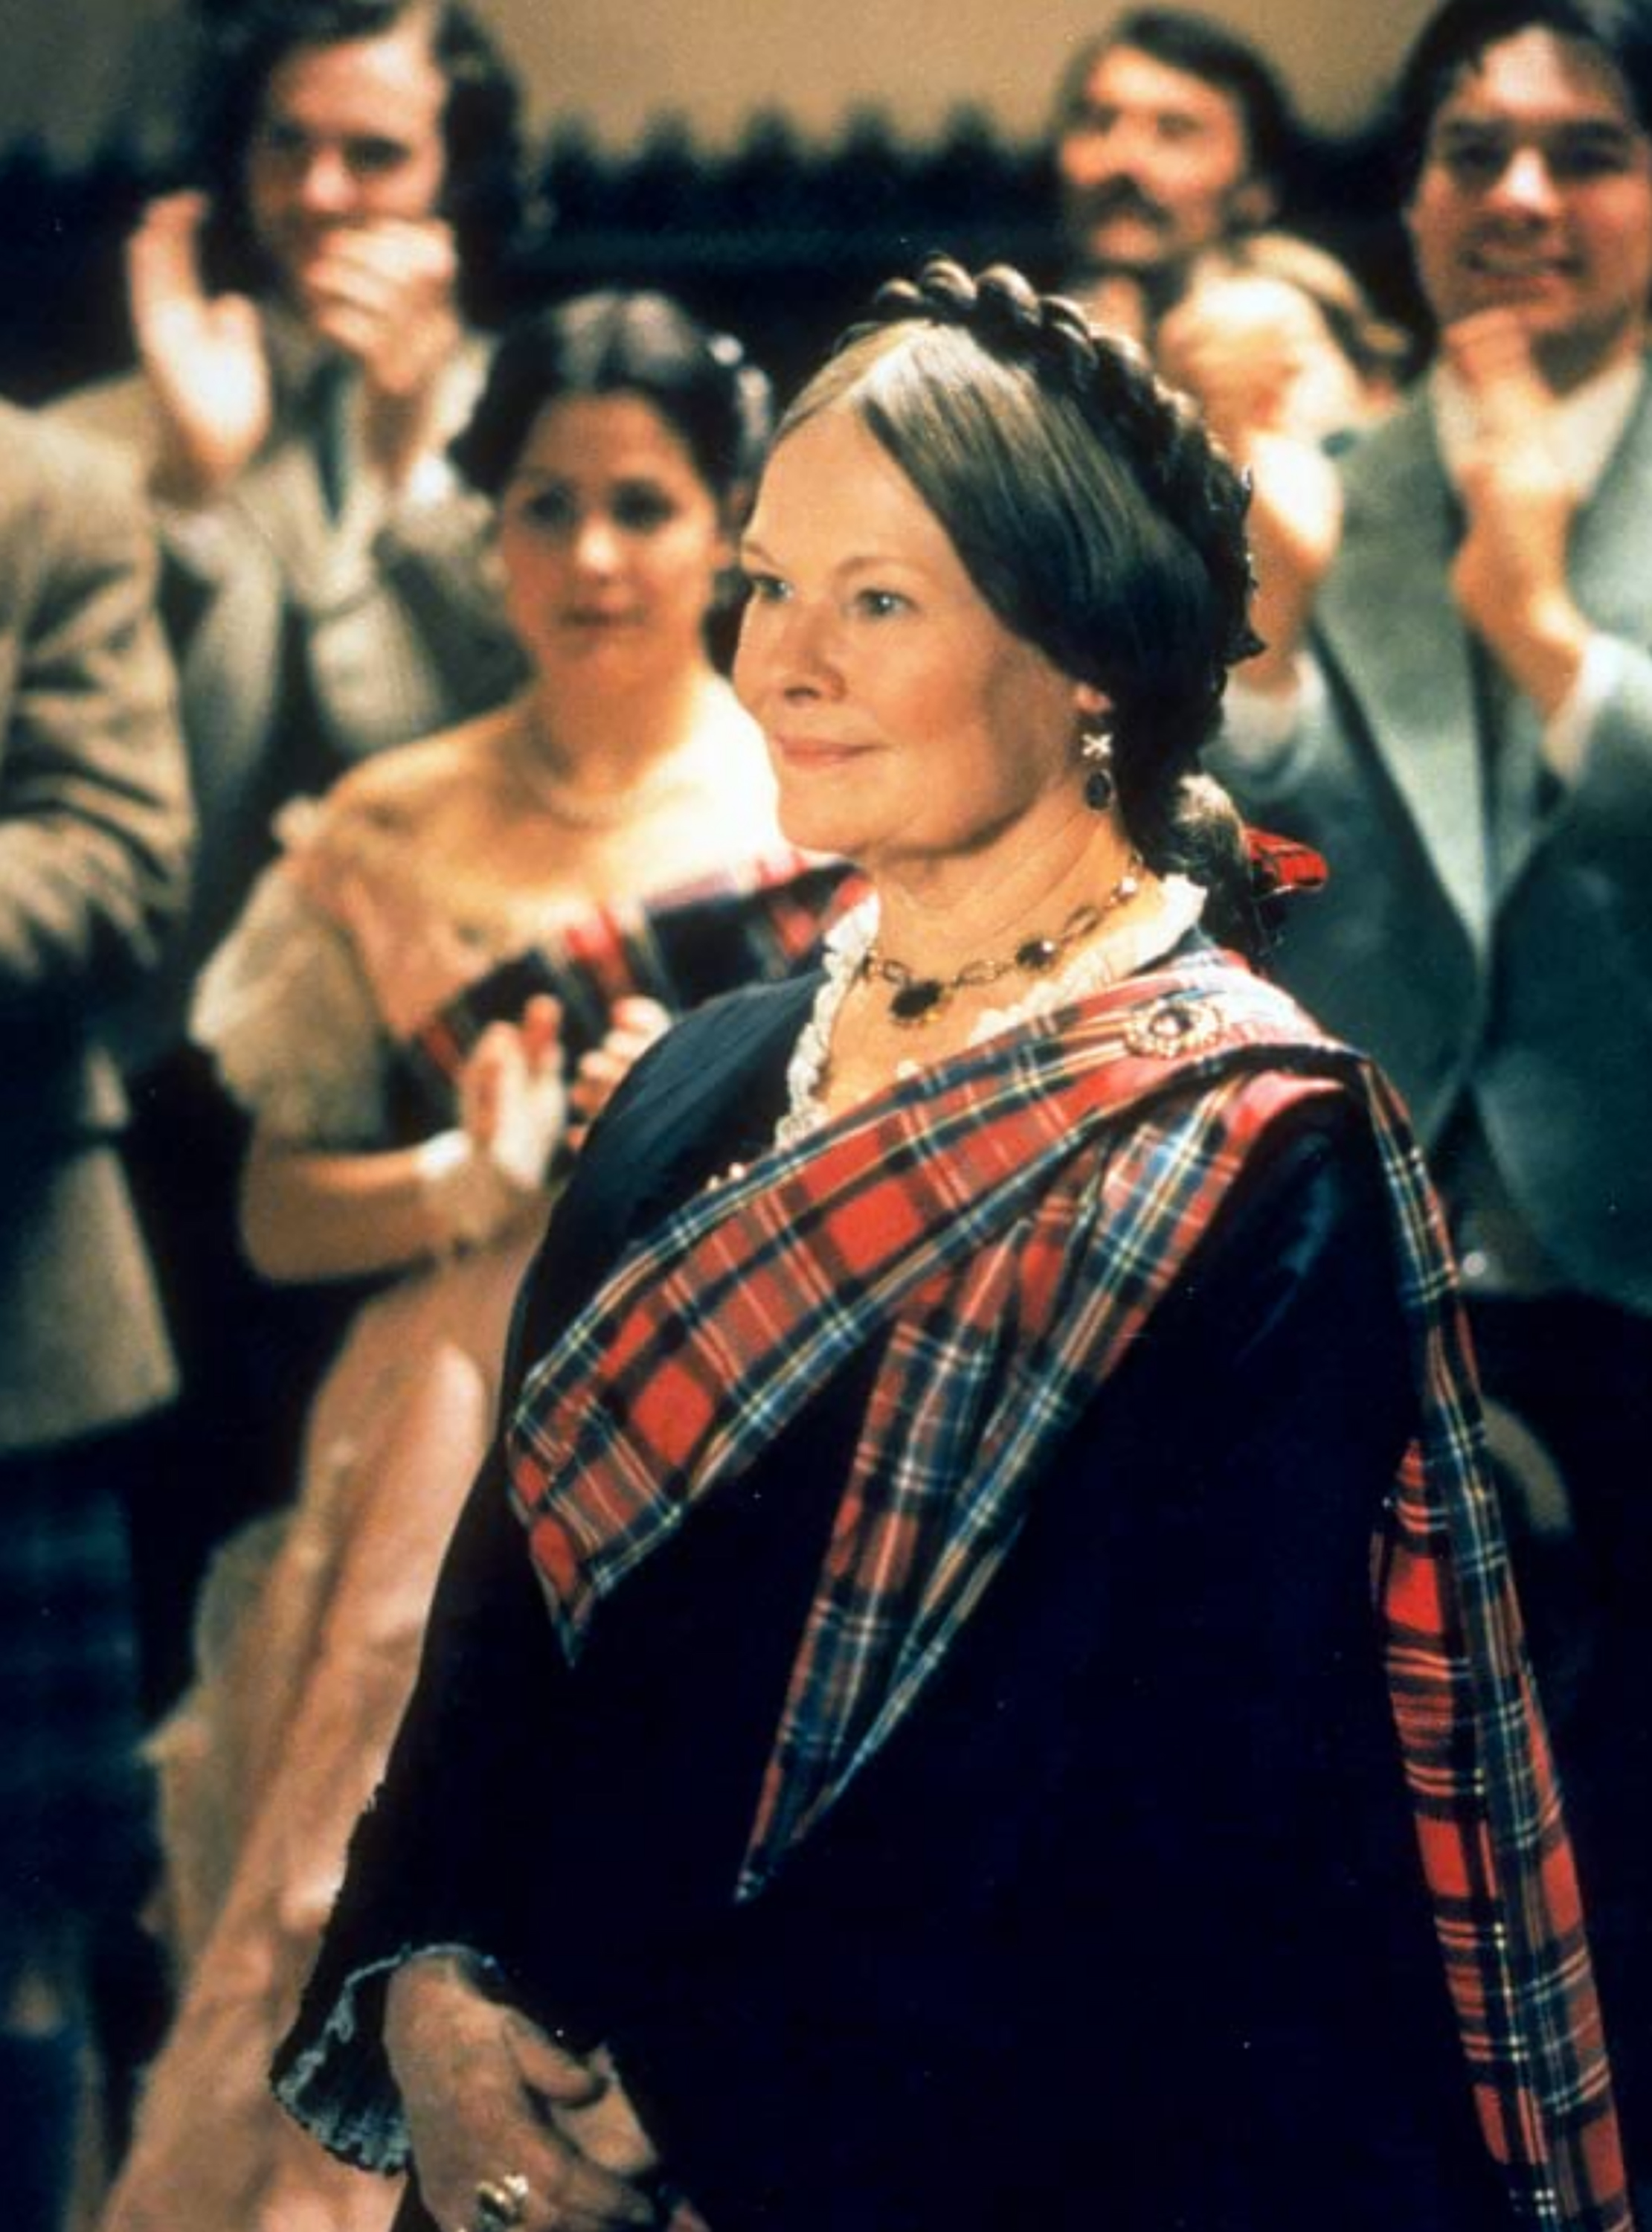 Judi Dench in "Mrs. Brown" (1997)